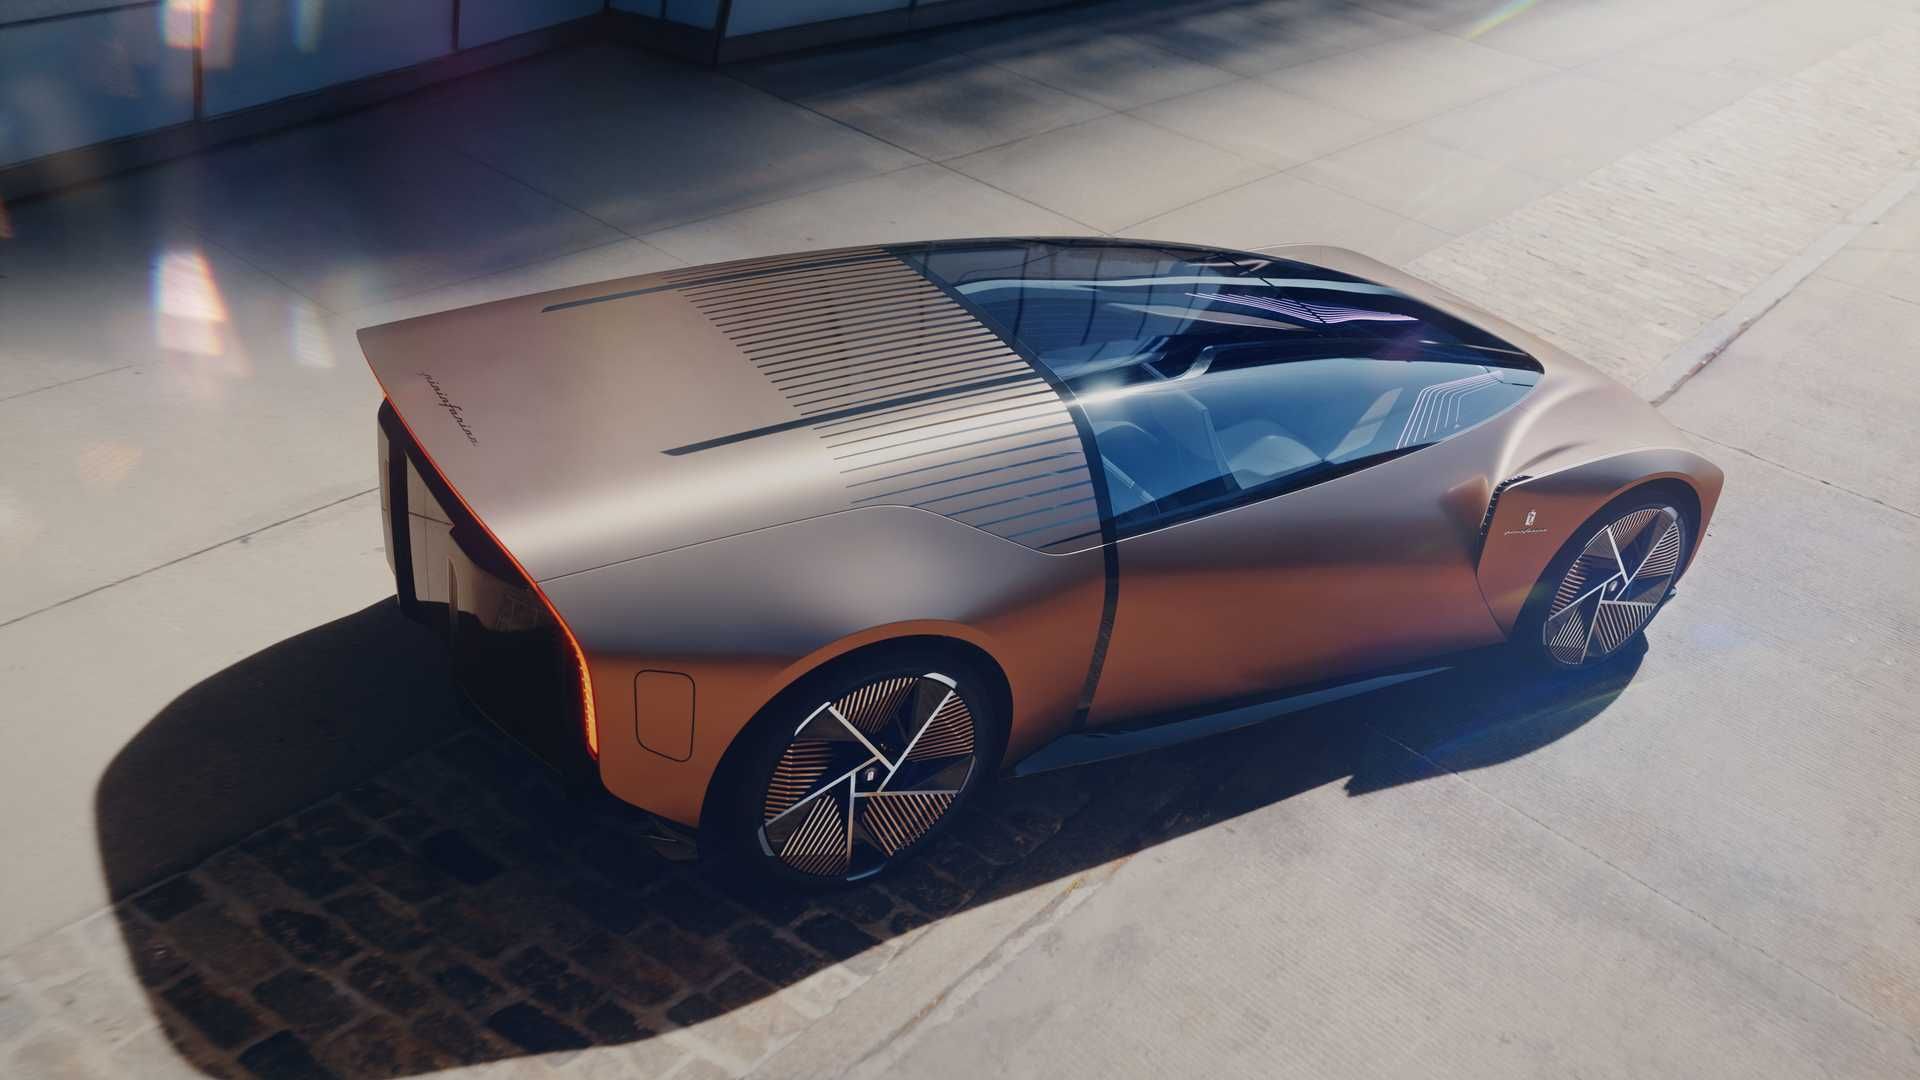 شیشه جلو و سقف خودروی مفهومی پینین فارینا تئوریما / Pininfarina Teorema Concept 